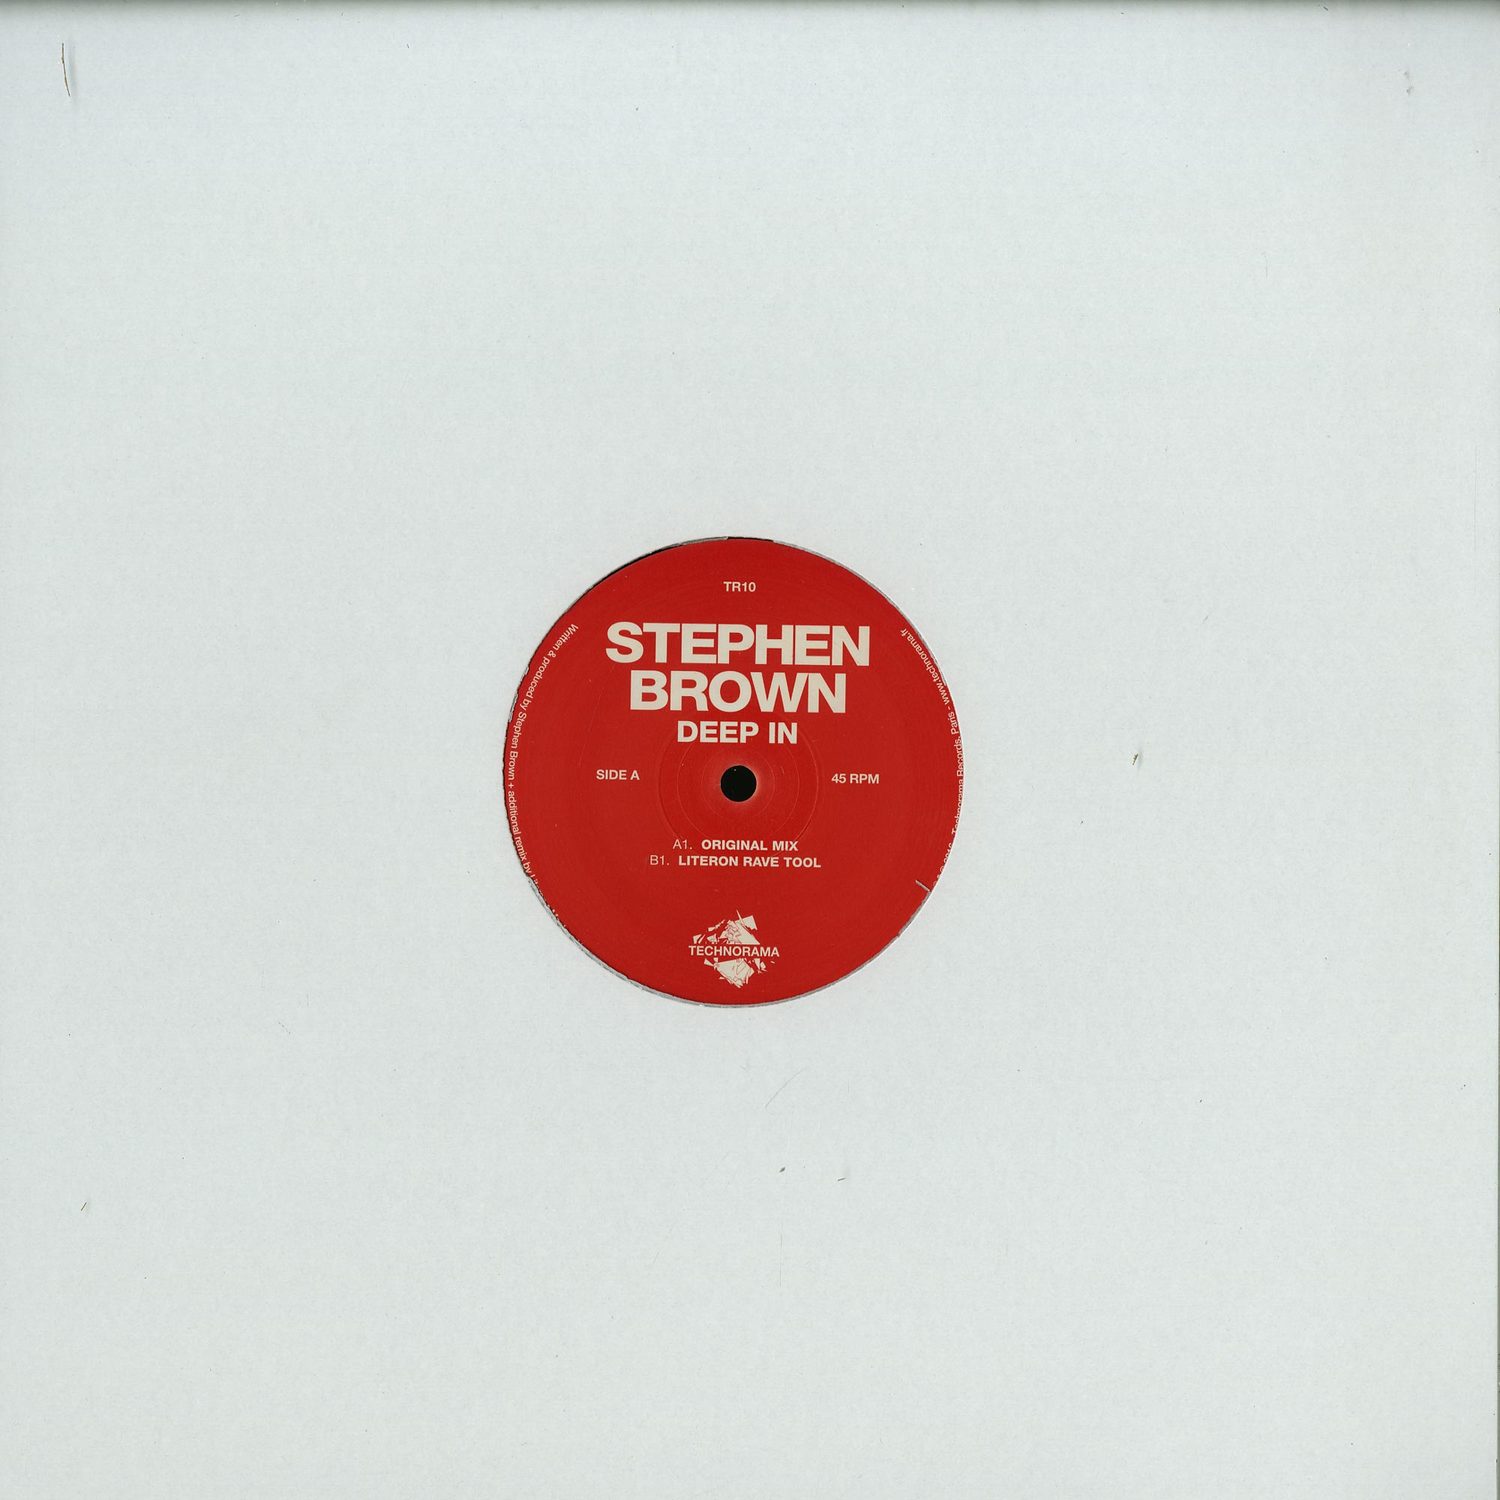 Stephen Brown - DEEP IN 